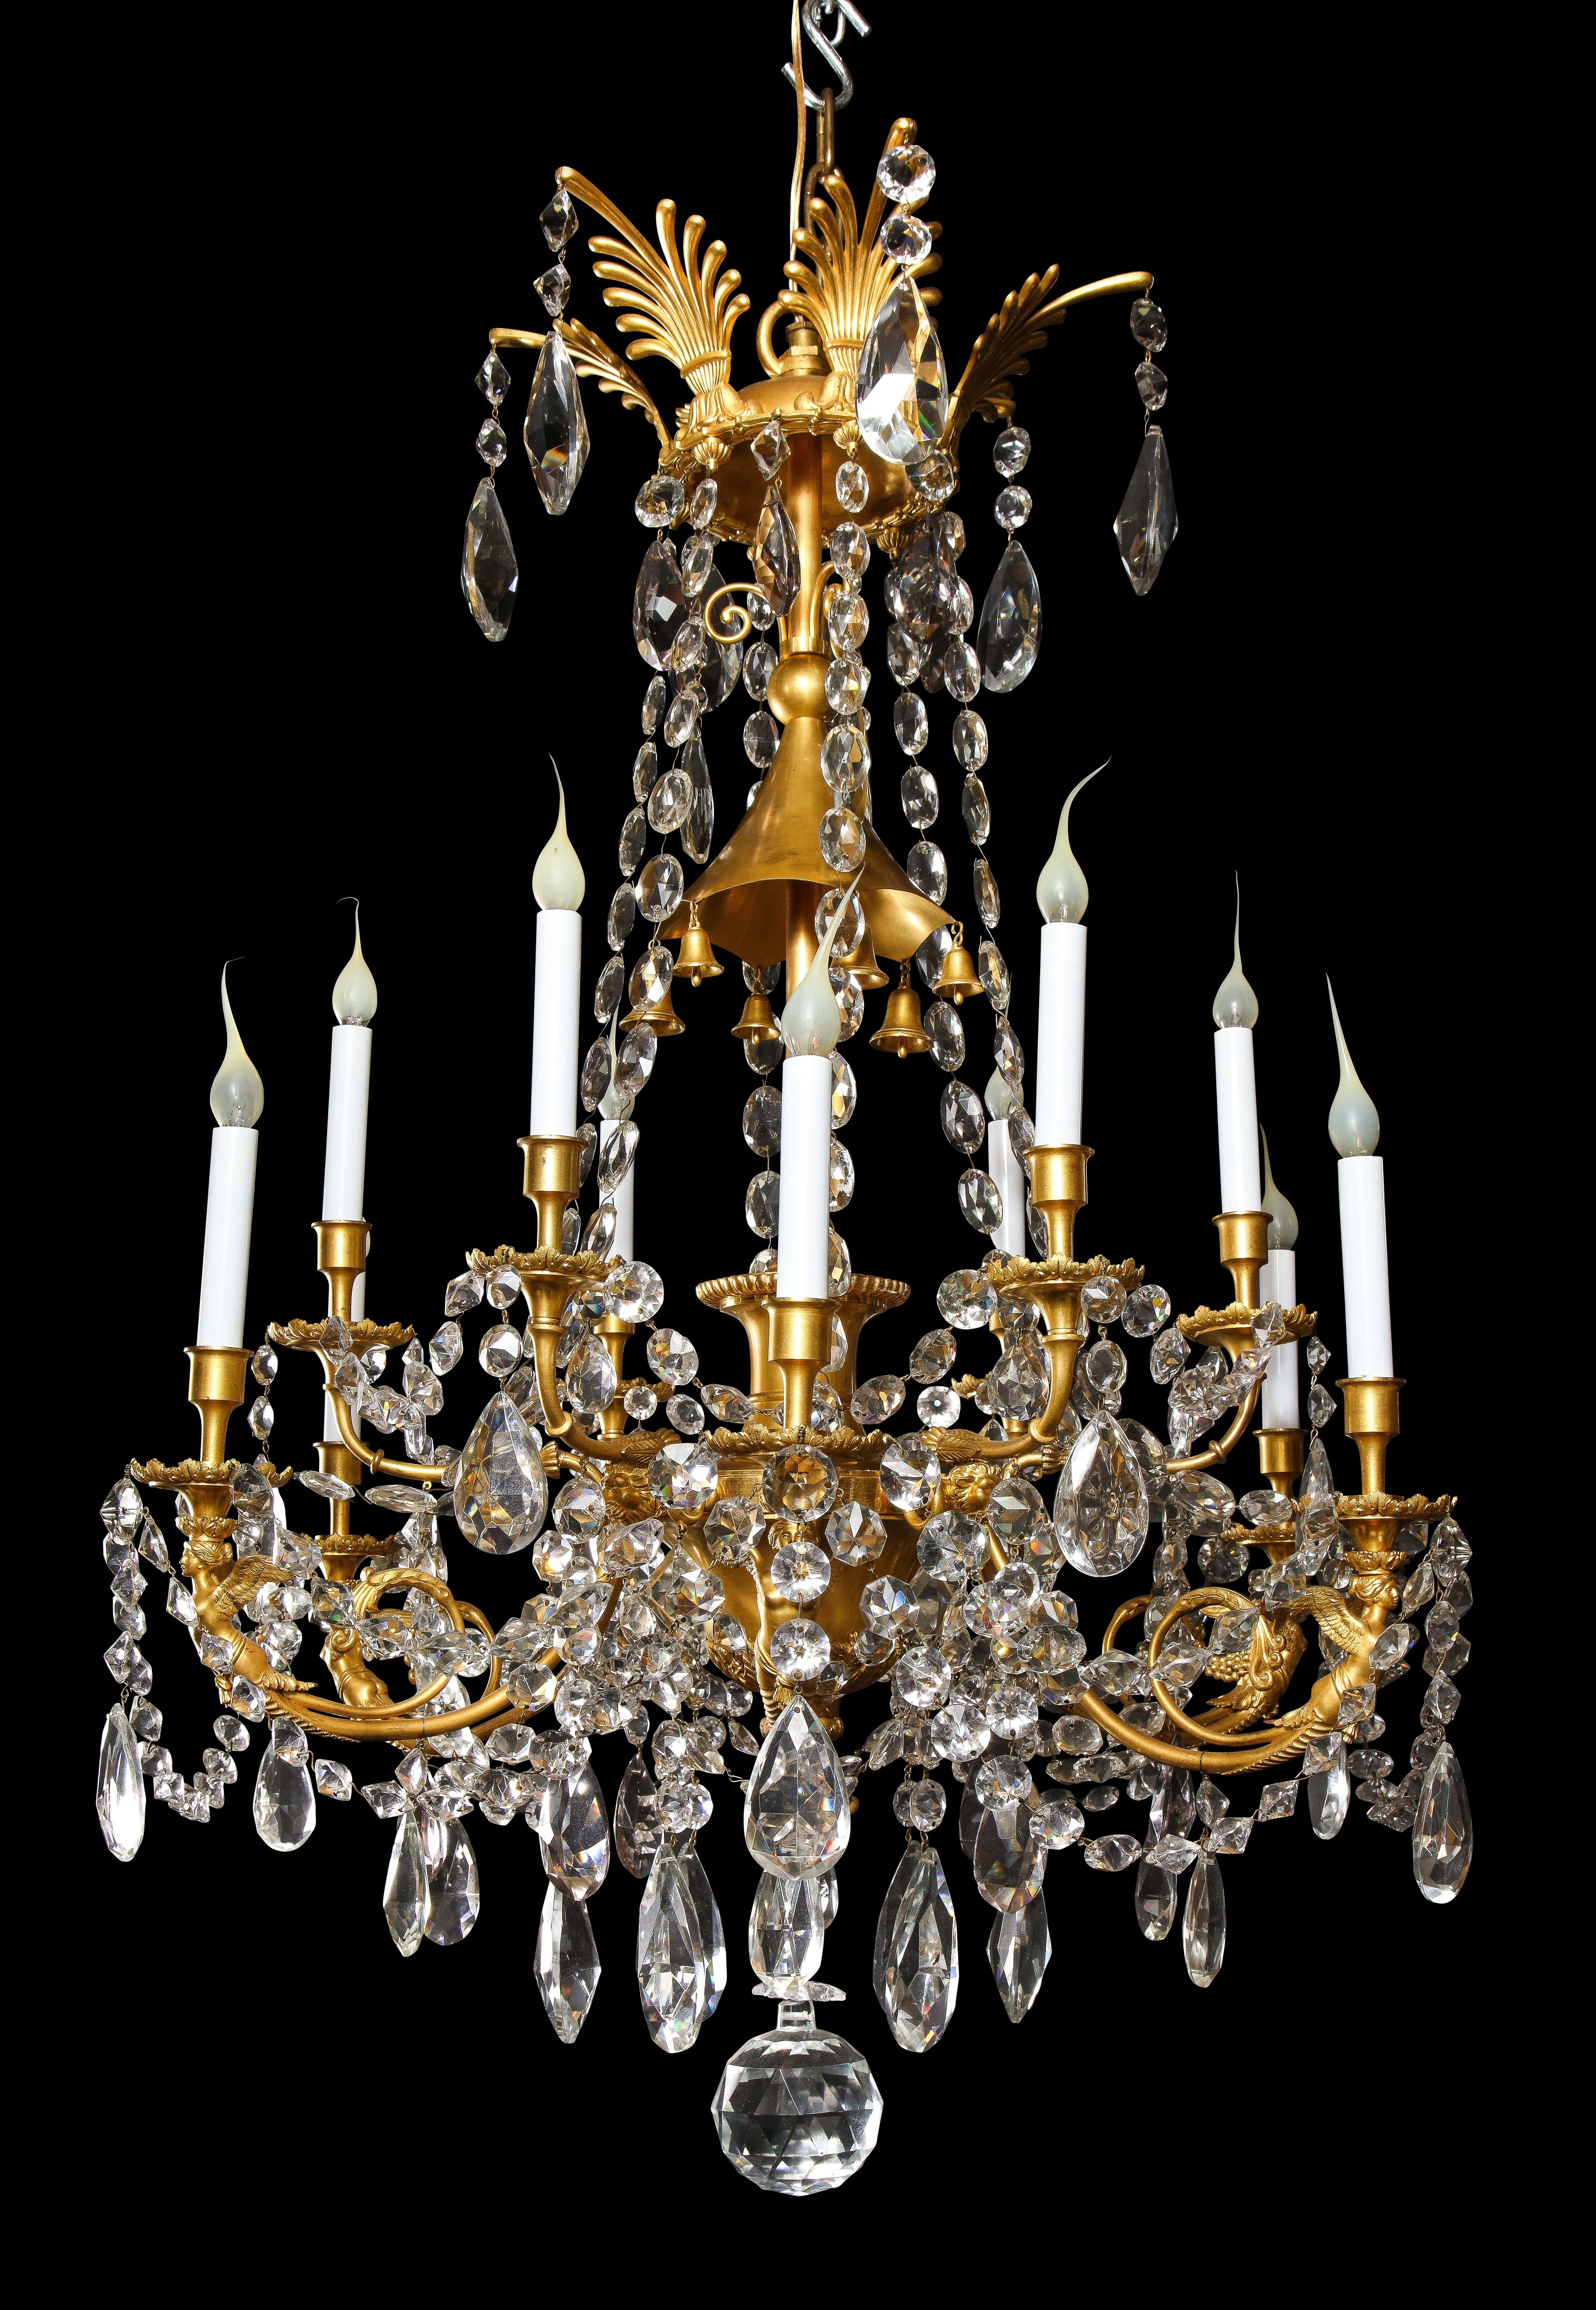 Eine spektakuläre und große antike Französisch Louis XVI-Stil vergoldeter Bronze und geschliffenem Kristall figuralen Multi-Licht zweistöckigen Kronleuchter von exquisiter Handwerkskunst. Dieser einzigartige Kronleuchter ist mit neoklassizistischen